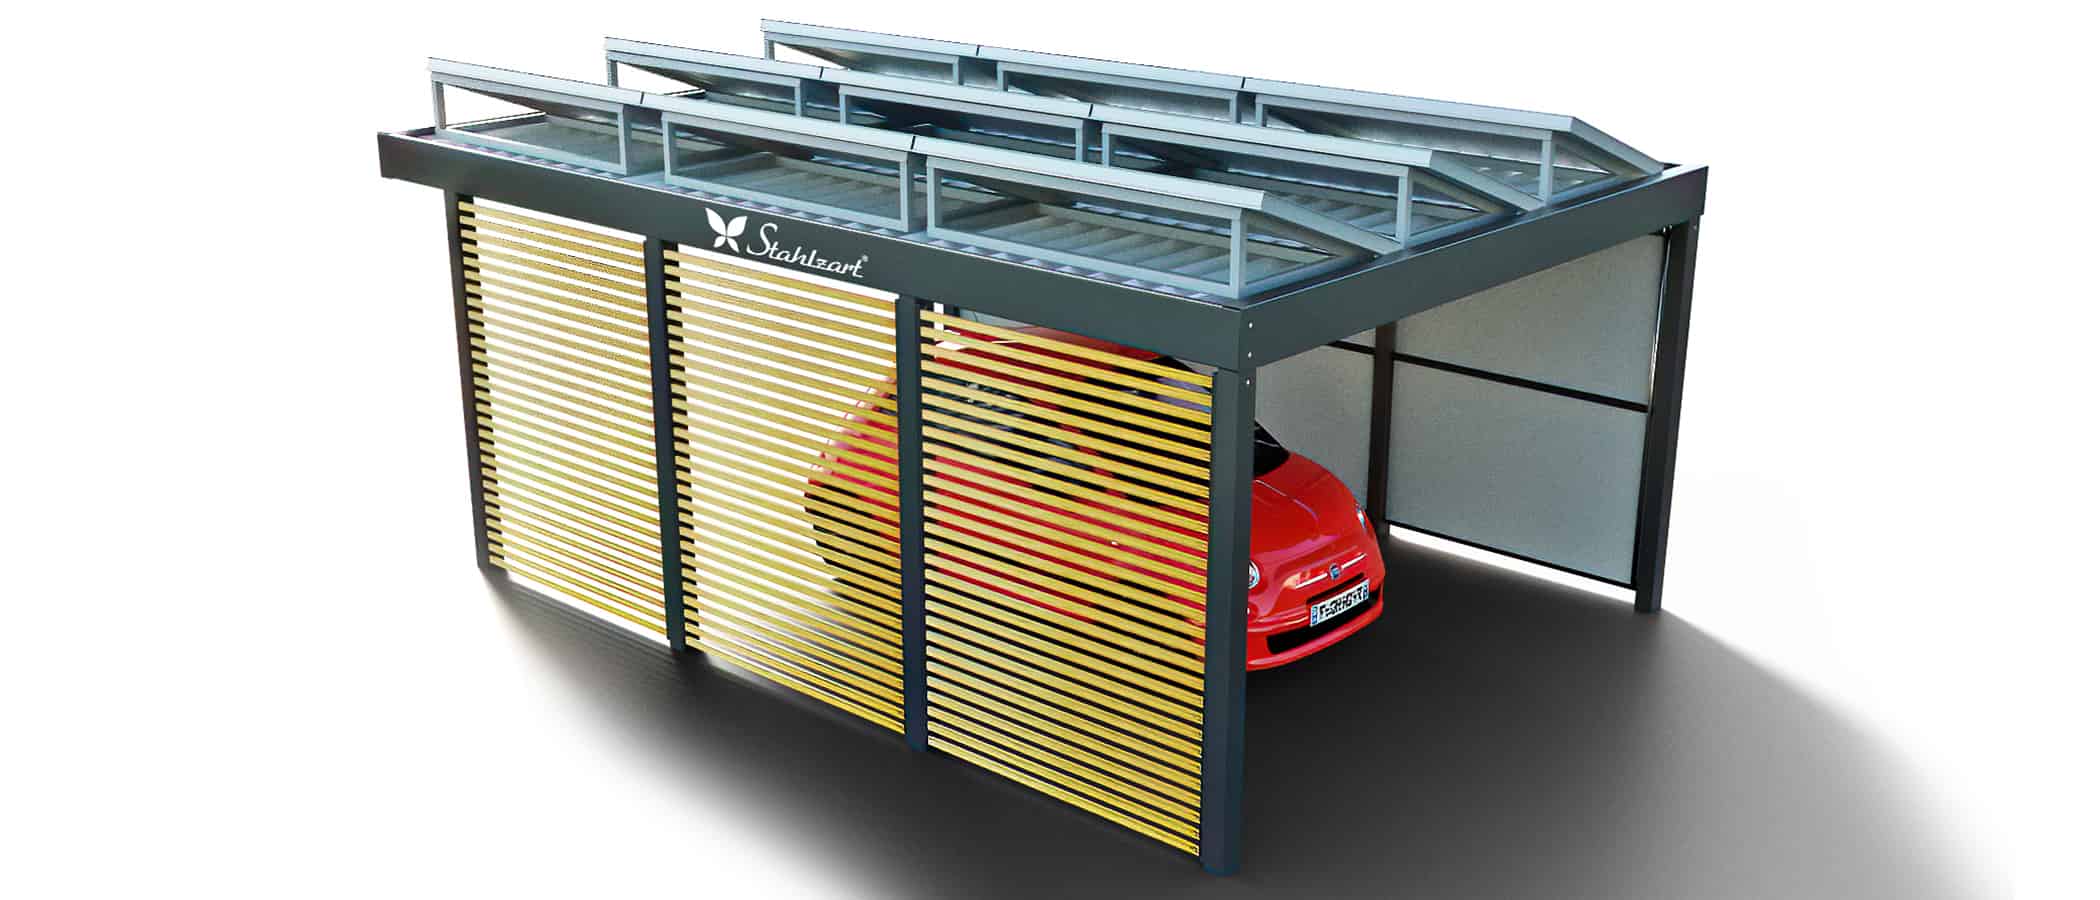 solar-carport-mit-flachdach-carports-pv-anlage-solaranlage-photovoltaik-garagen-garagendach-solarcarport-installation-seitenwand-solarmodulen-solarcarports-flaechen-e-auto-fiat-holz-metall-stahlzart